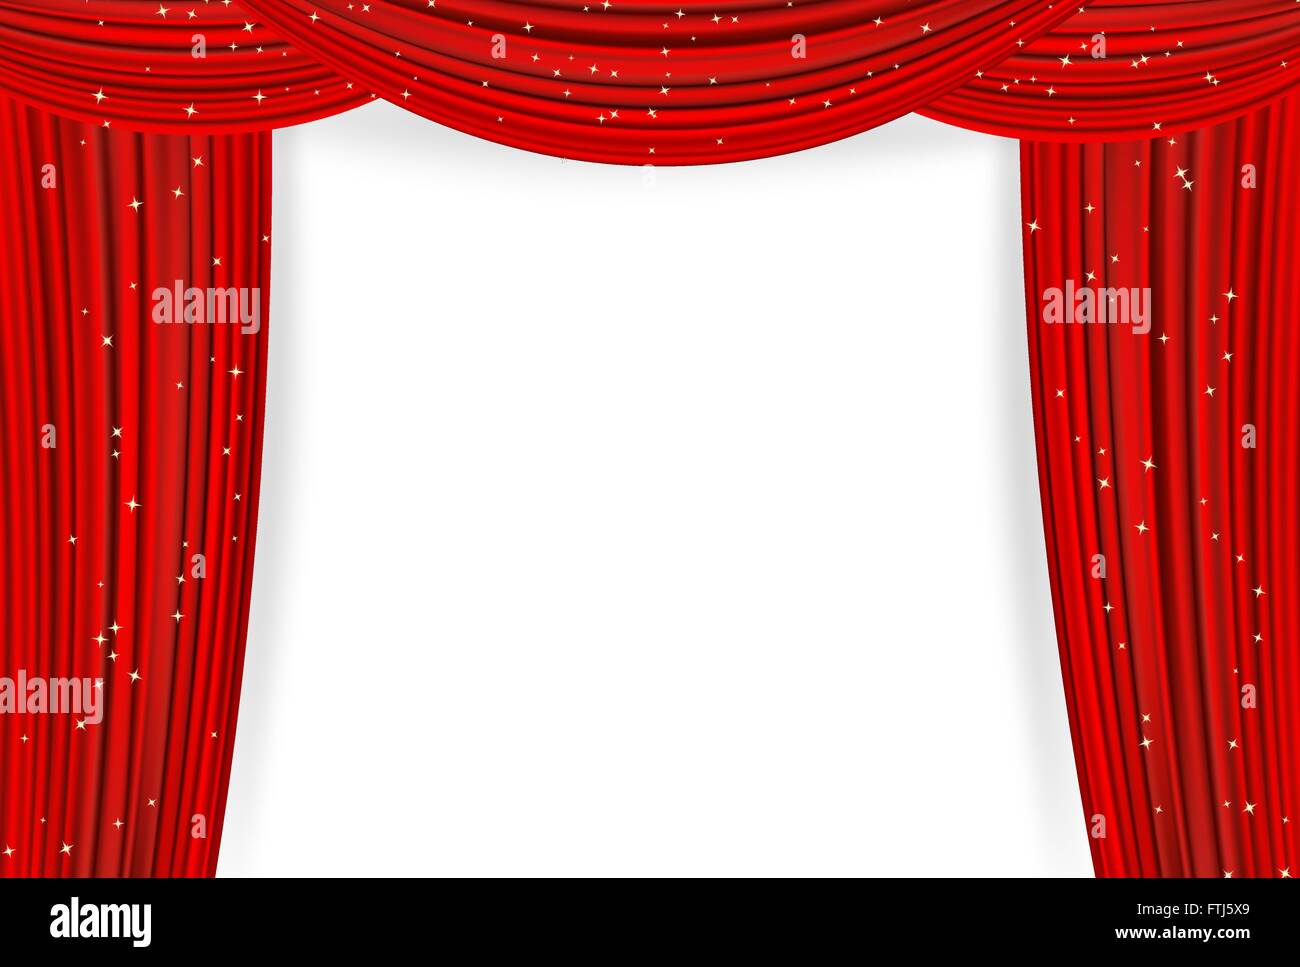 Offene rote Vorhänge mit Sternen auf weißem Hintergrund. Theater oder Film Präsentation oder Cinema Award Ankündigung mit Platz für text Stock Vektor